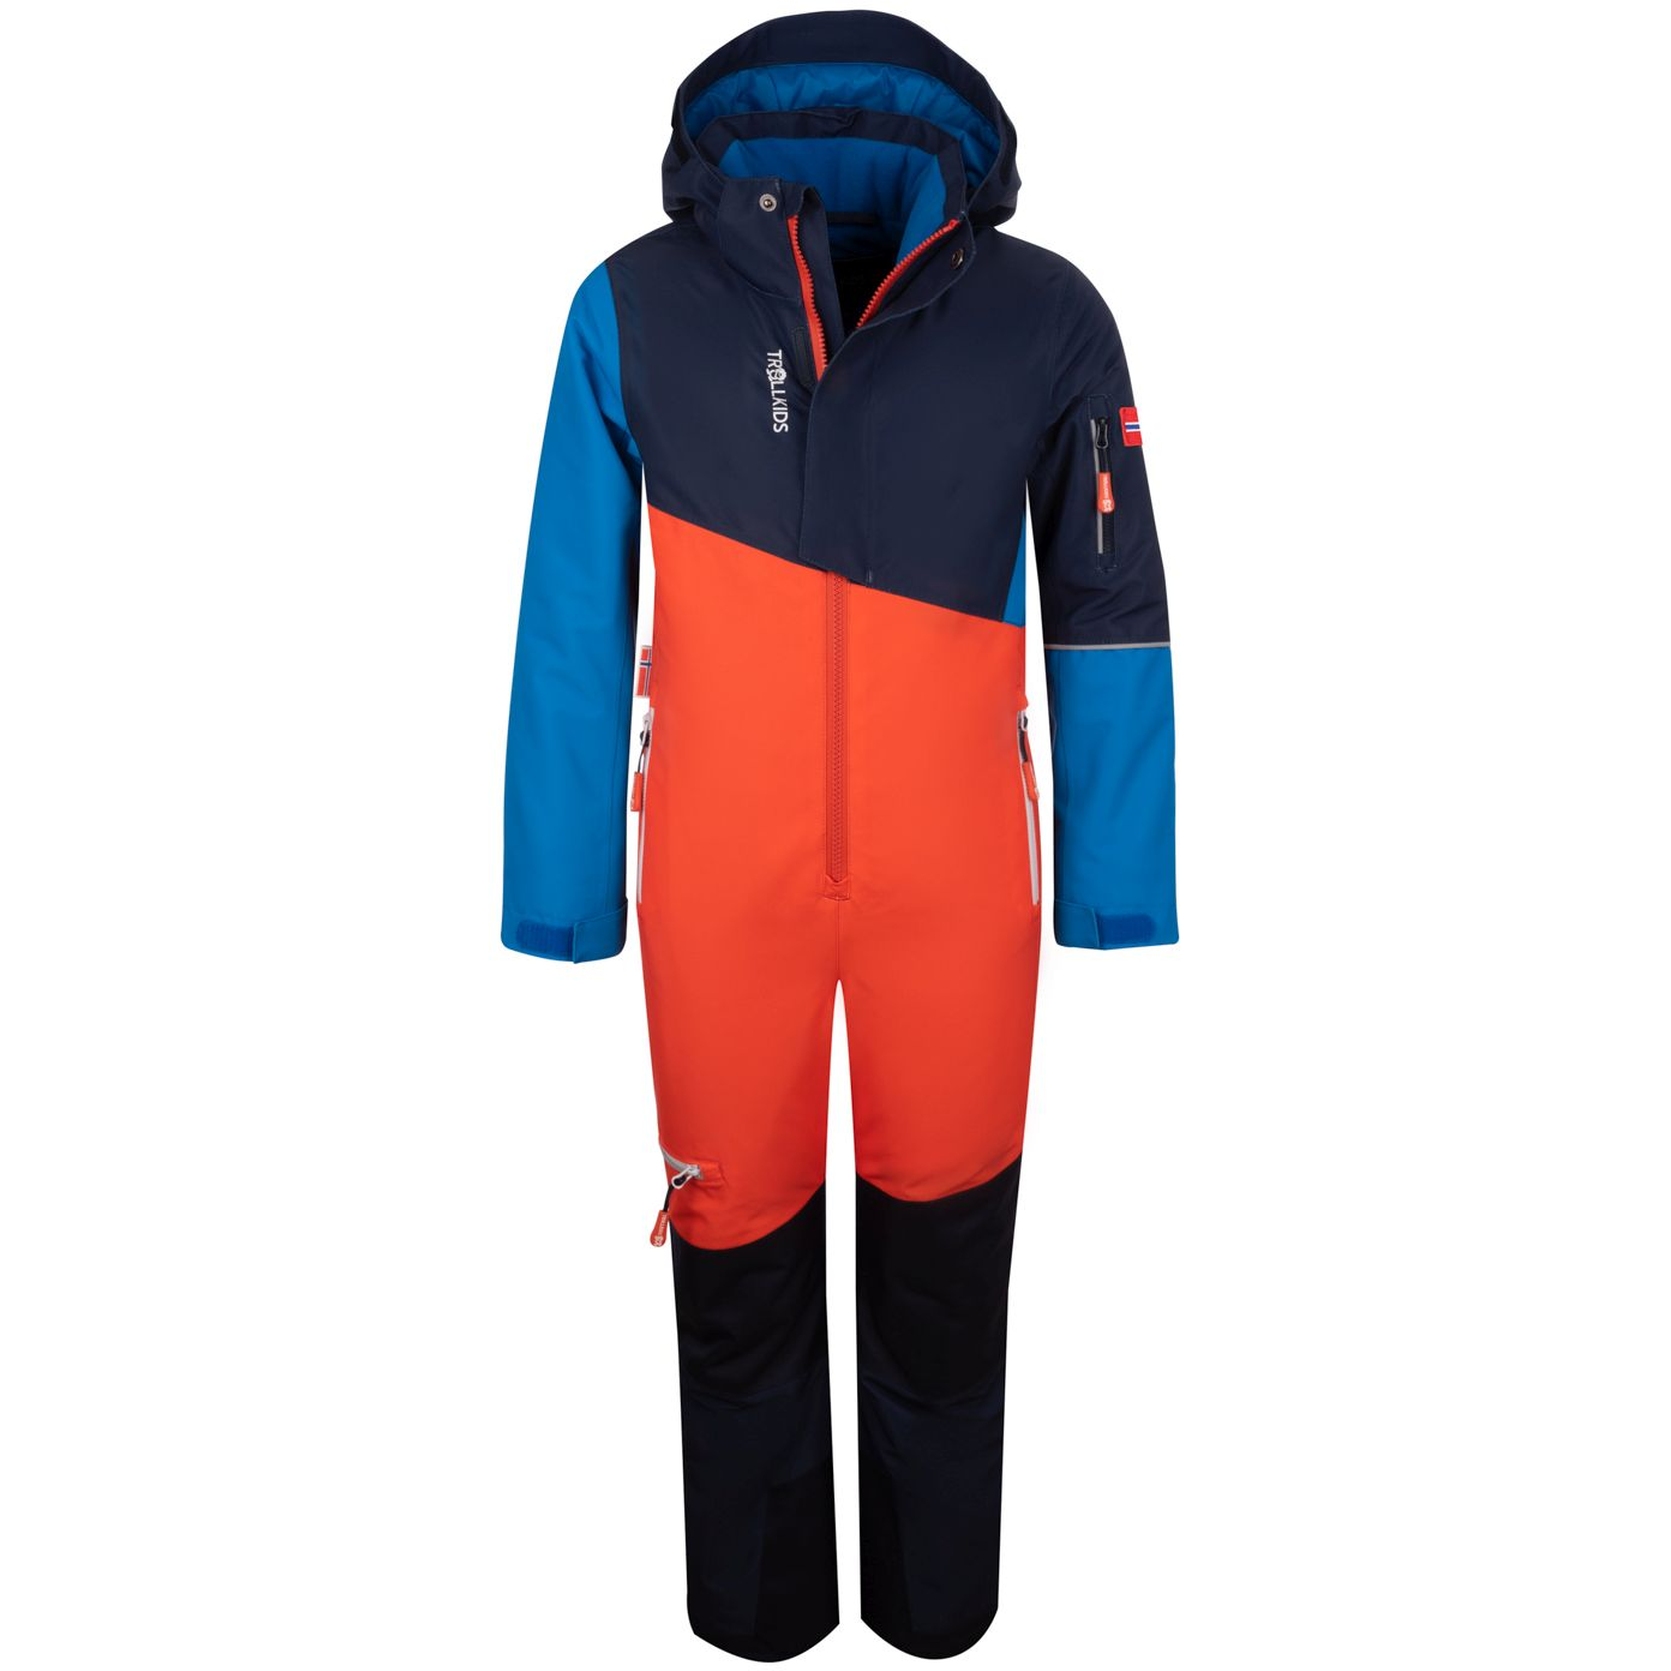 Produktbild von Trollkids Hallingdal Schneeanzug Kinder - Flame Orange/Medium Blue/Navy